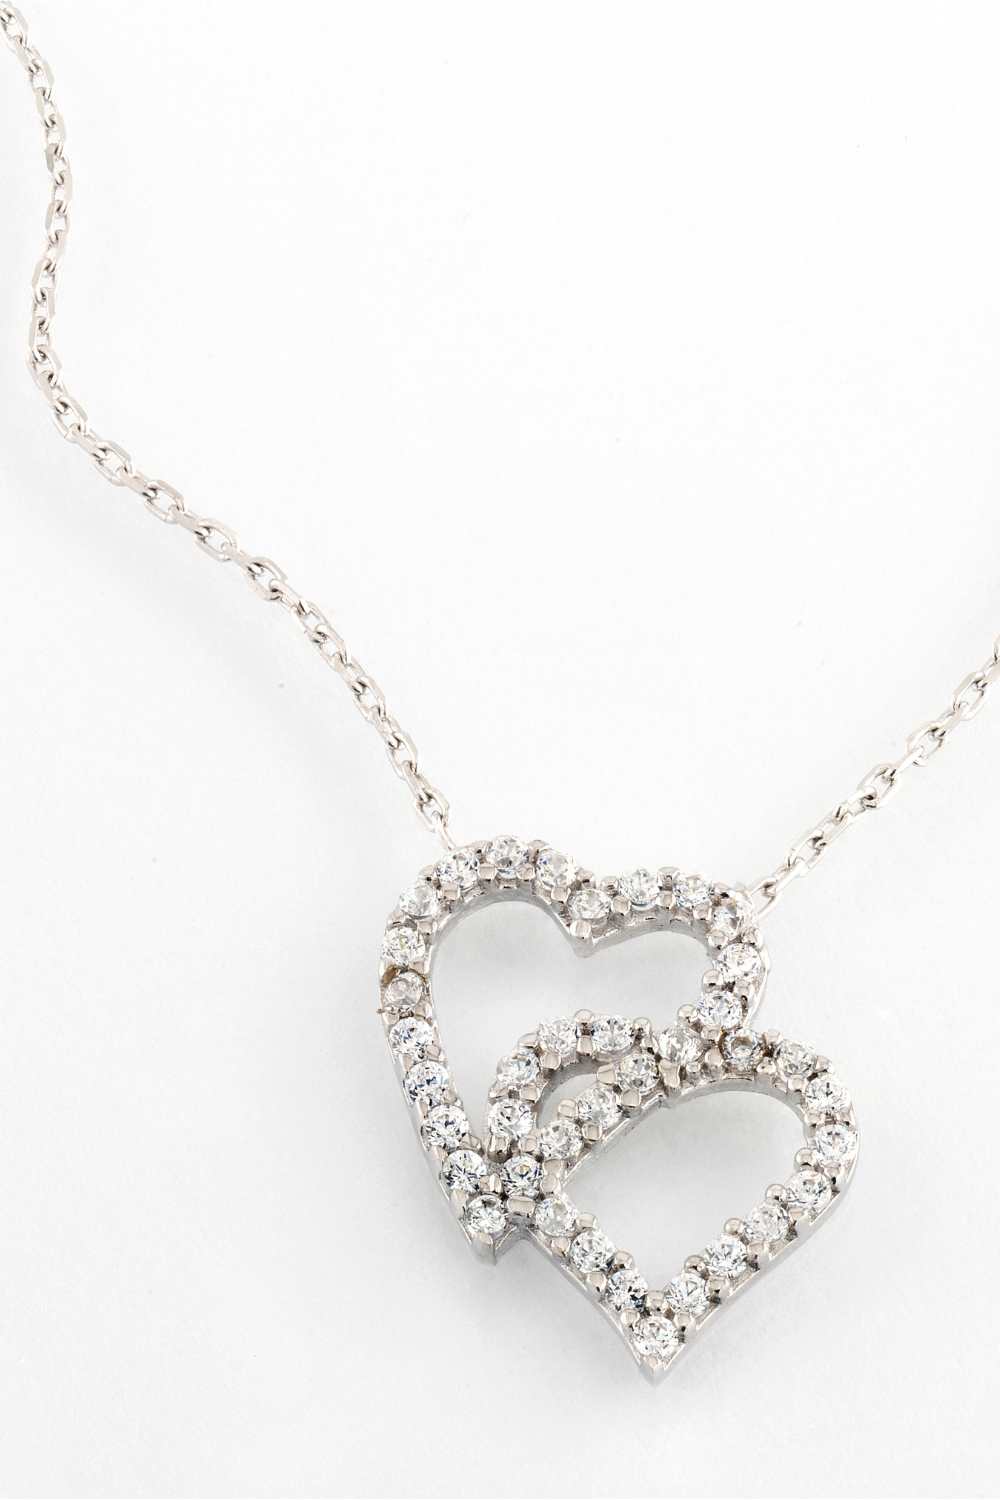 Diamond gifts, diamond necklace